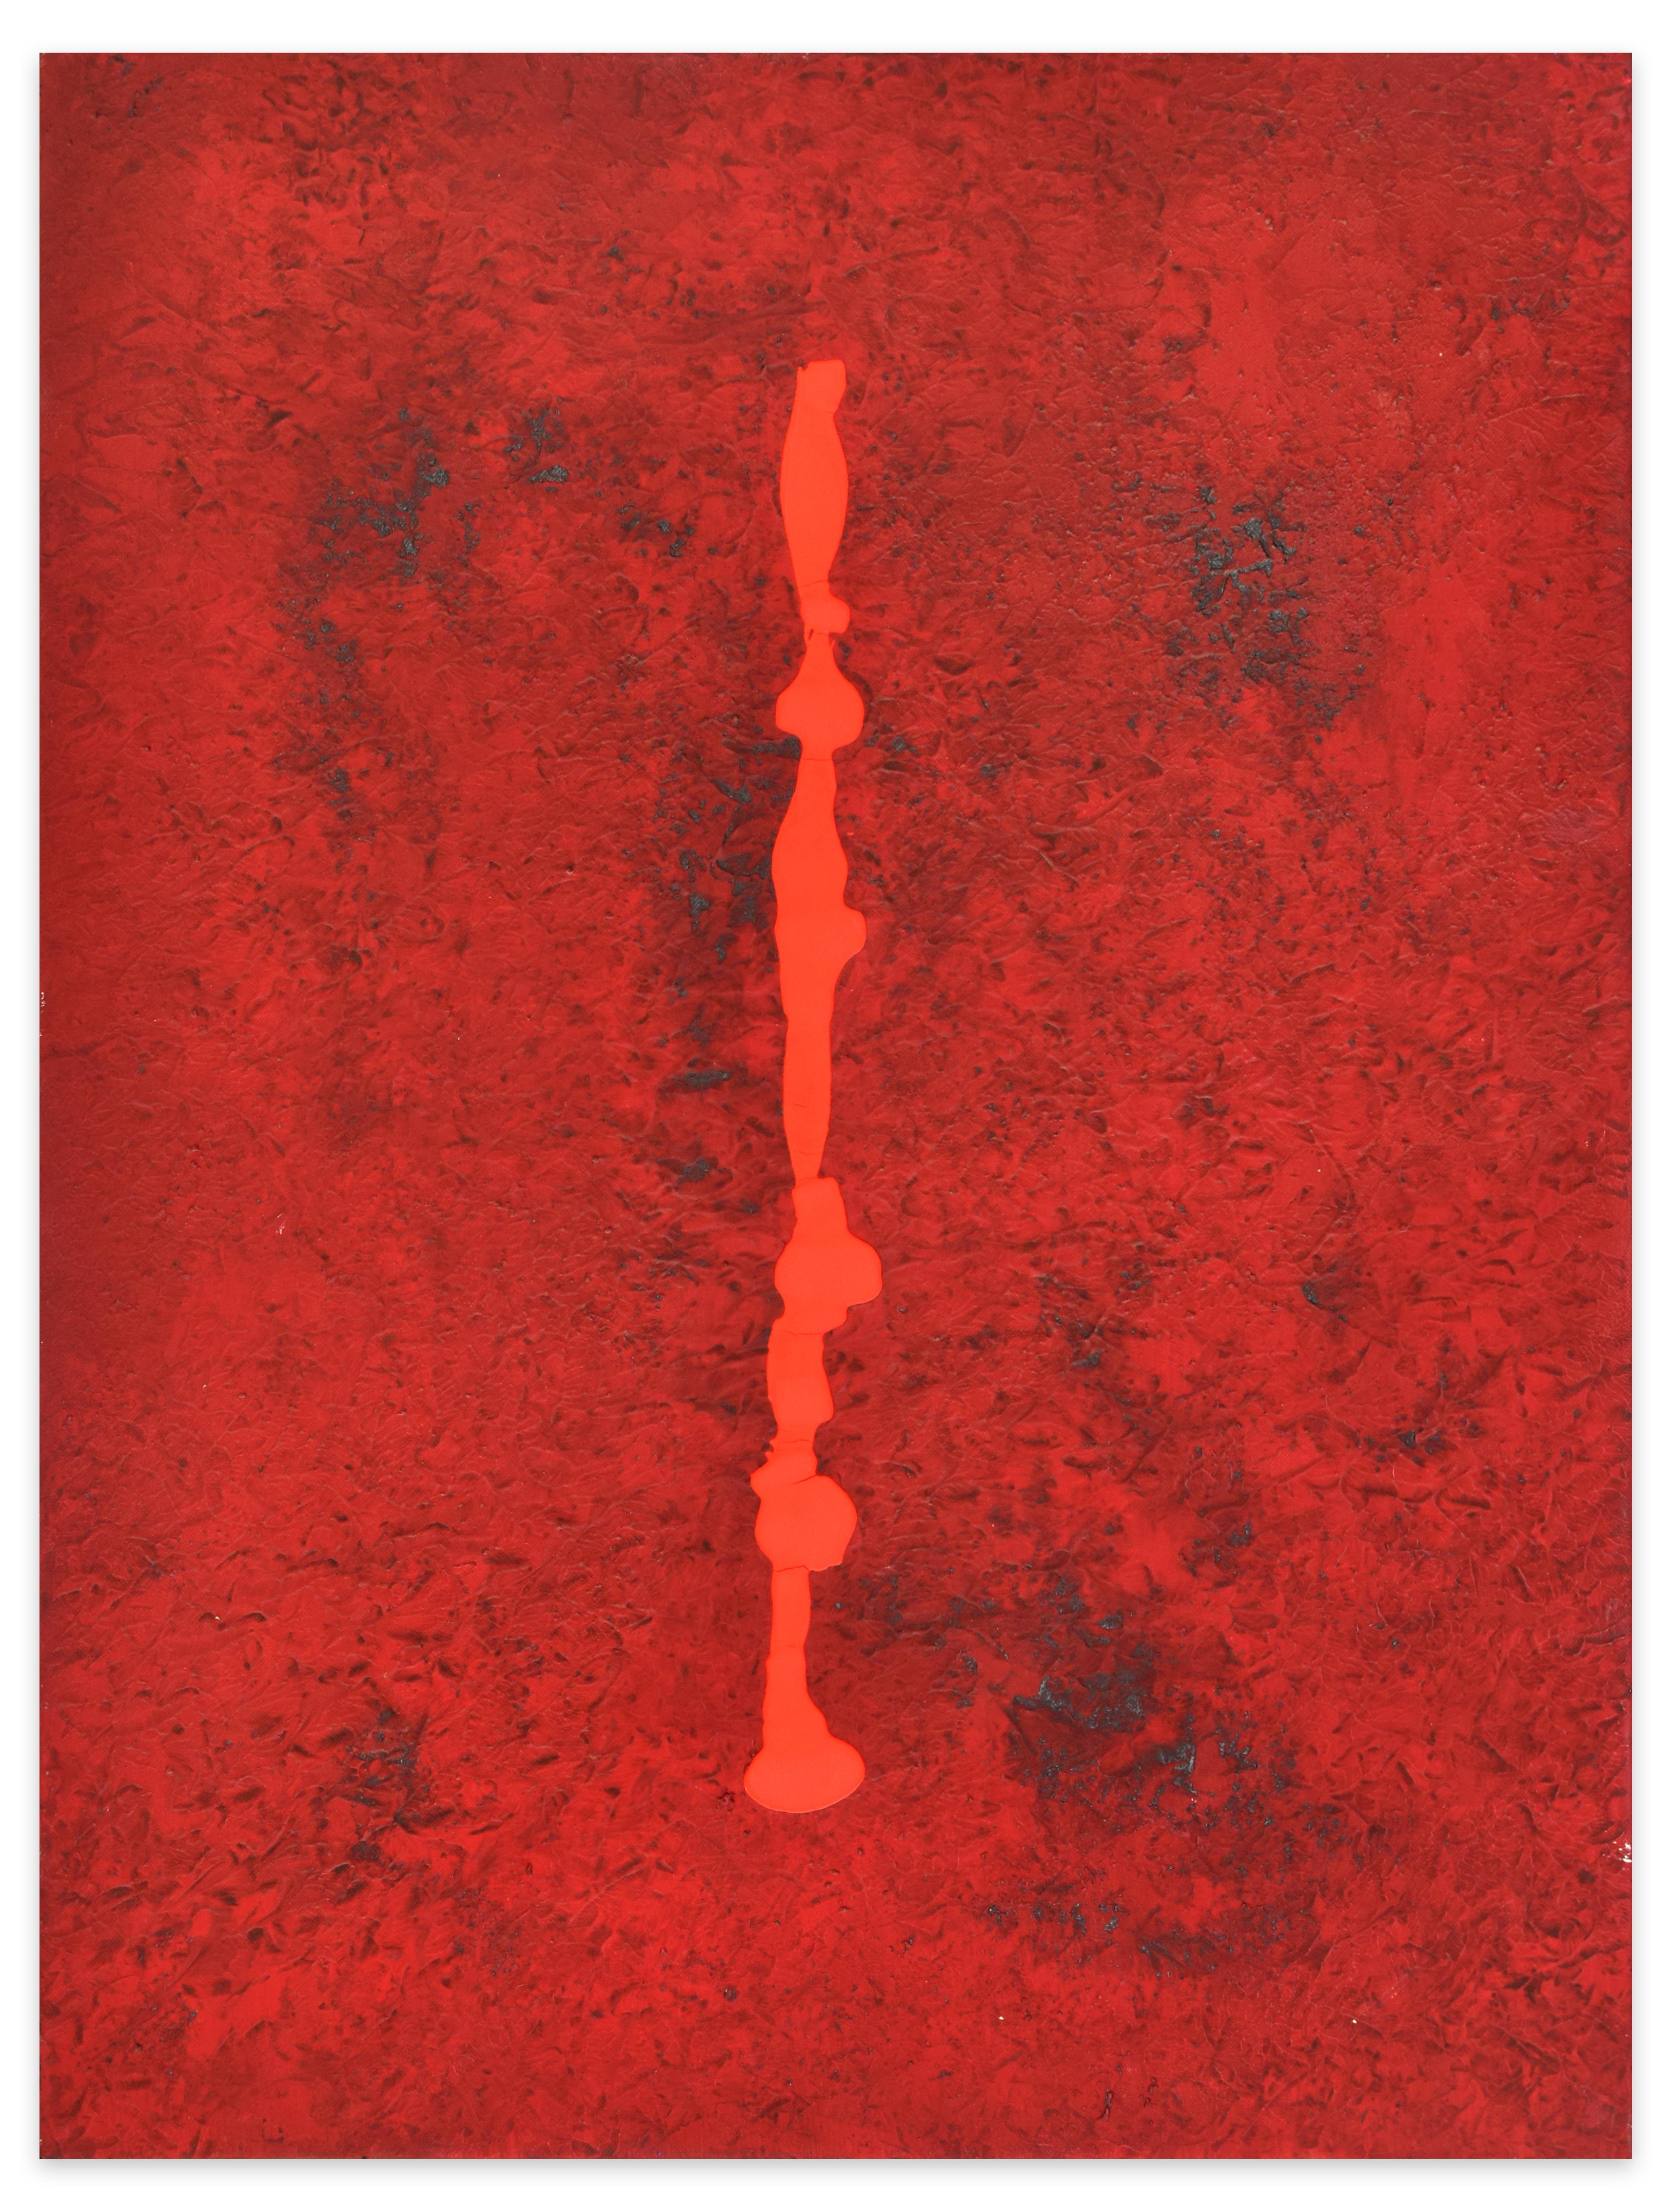 Dripping ist ein Originalgemälde in Öl und Mischtechnik auf Leinwand, das der italienische Künstler Marco Amici 1993 geschaffen hat.

Originaltitel: Colatura.

Dieses zeitgenössische Kunstwerk, im Einklang mit den großen Trends des XX. Jahrhunderts,